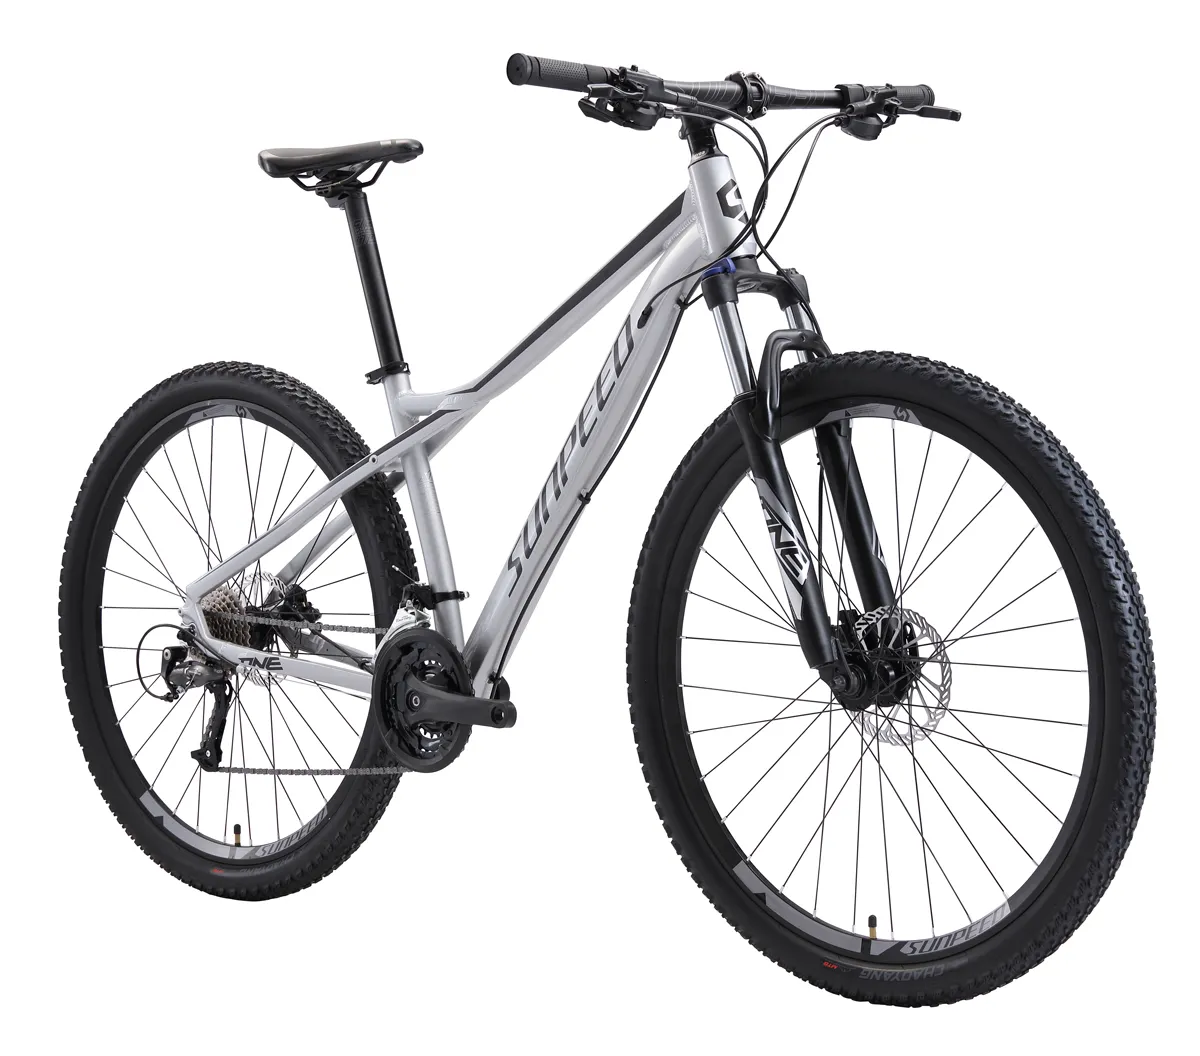 Sunpeed лучший горный спортивный велосипед 24 скорости 27,5/29 дюймов низкая цена высокое качество горный велосипед